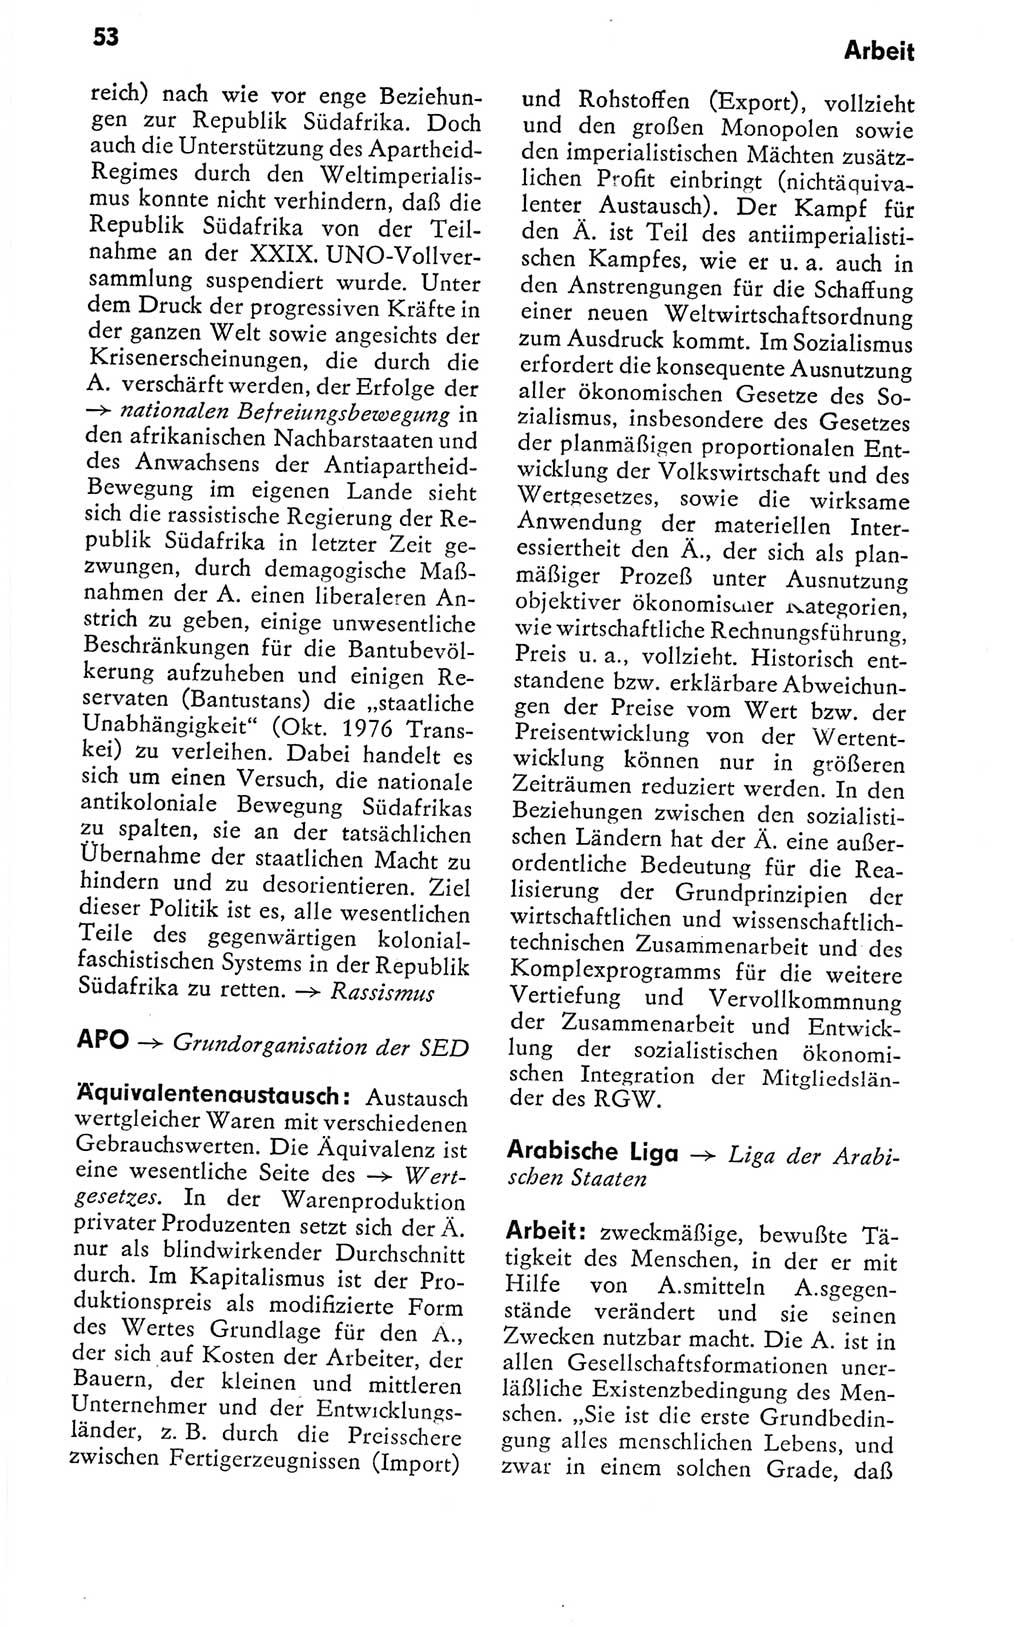 Kleines politisches Wörterbuch [Deutsche Demokratische Republik (DDR)] 1978, Seite 53 (Kl. pol. Wb. DDR 1978, S. 53)